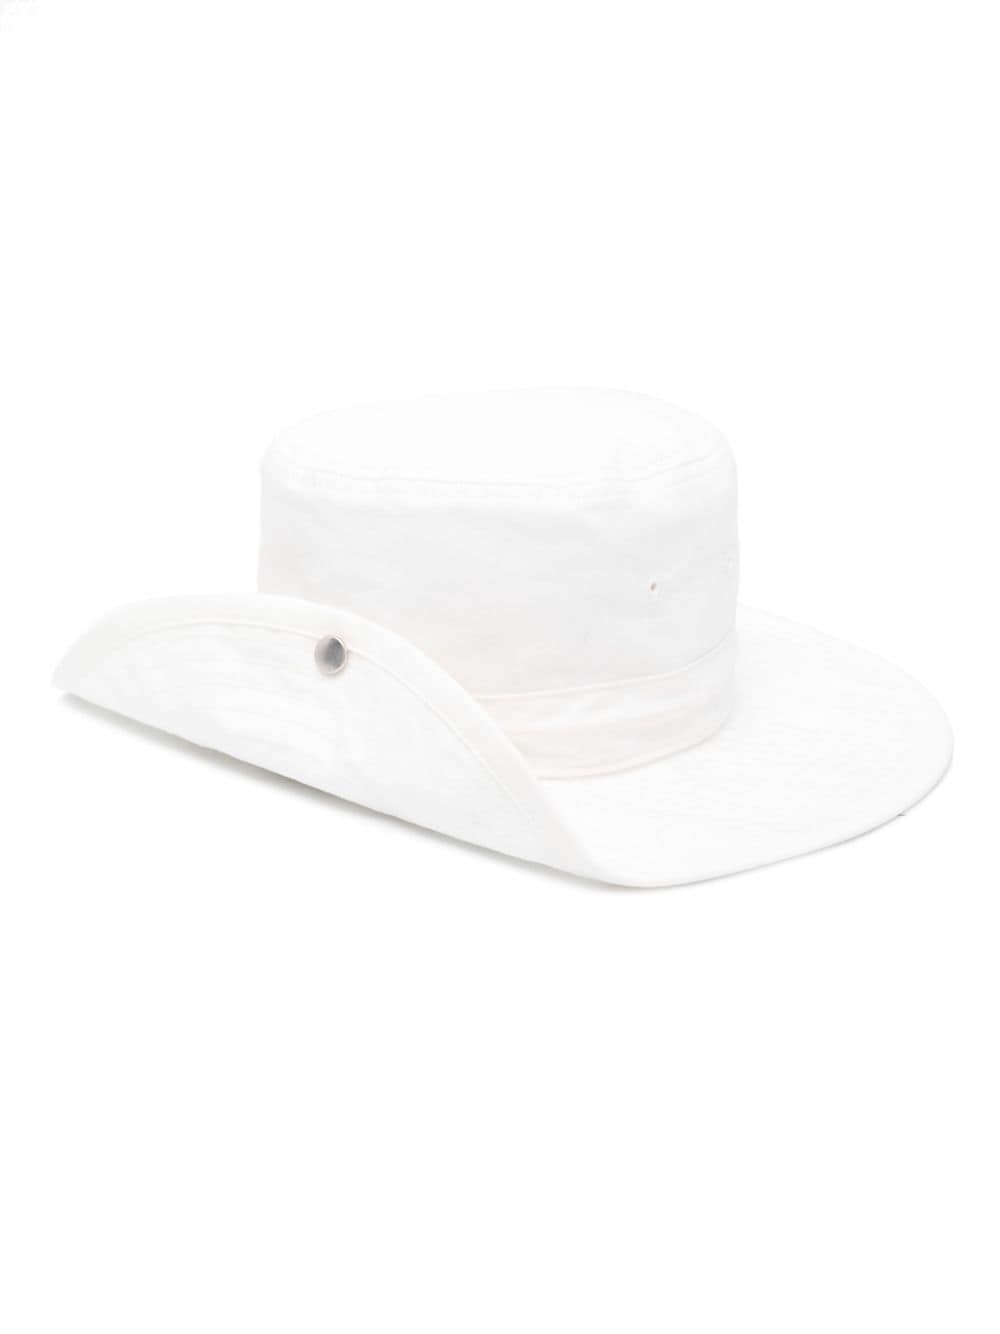 Jil Sander Turn-up Brim Cotton Sun Hat In Neutrals